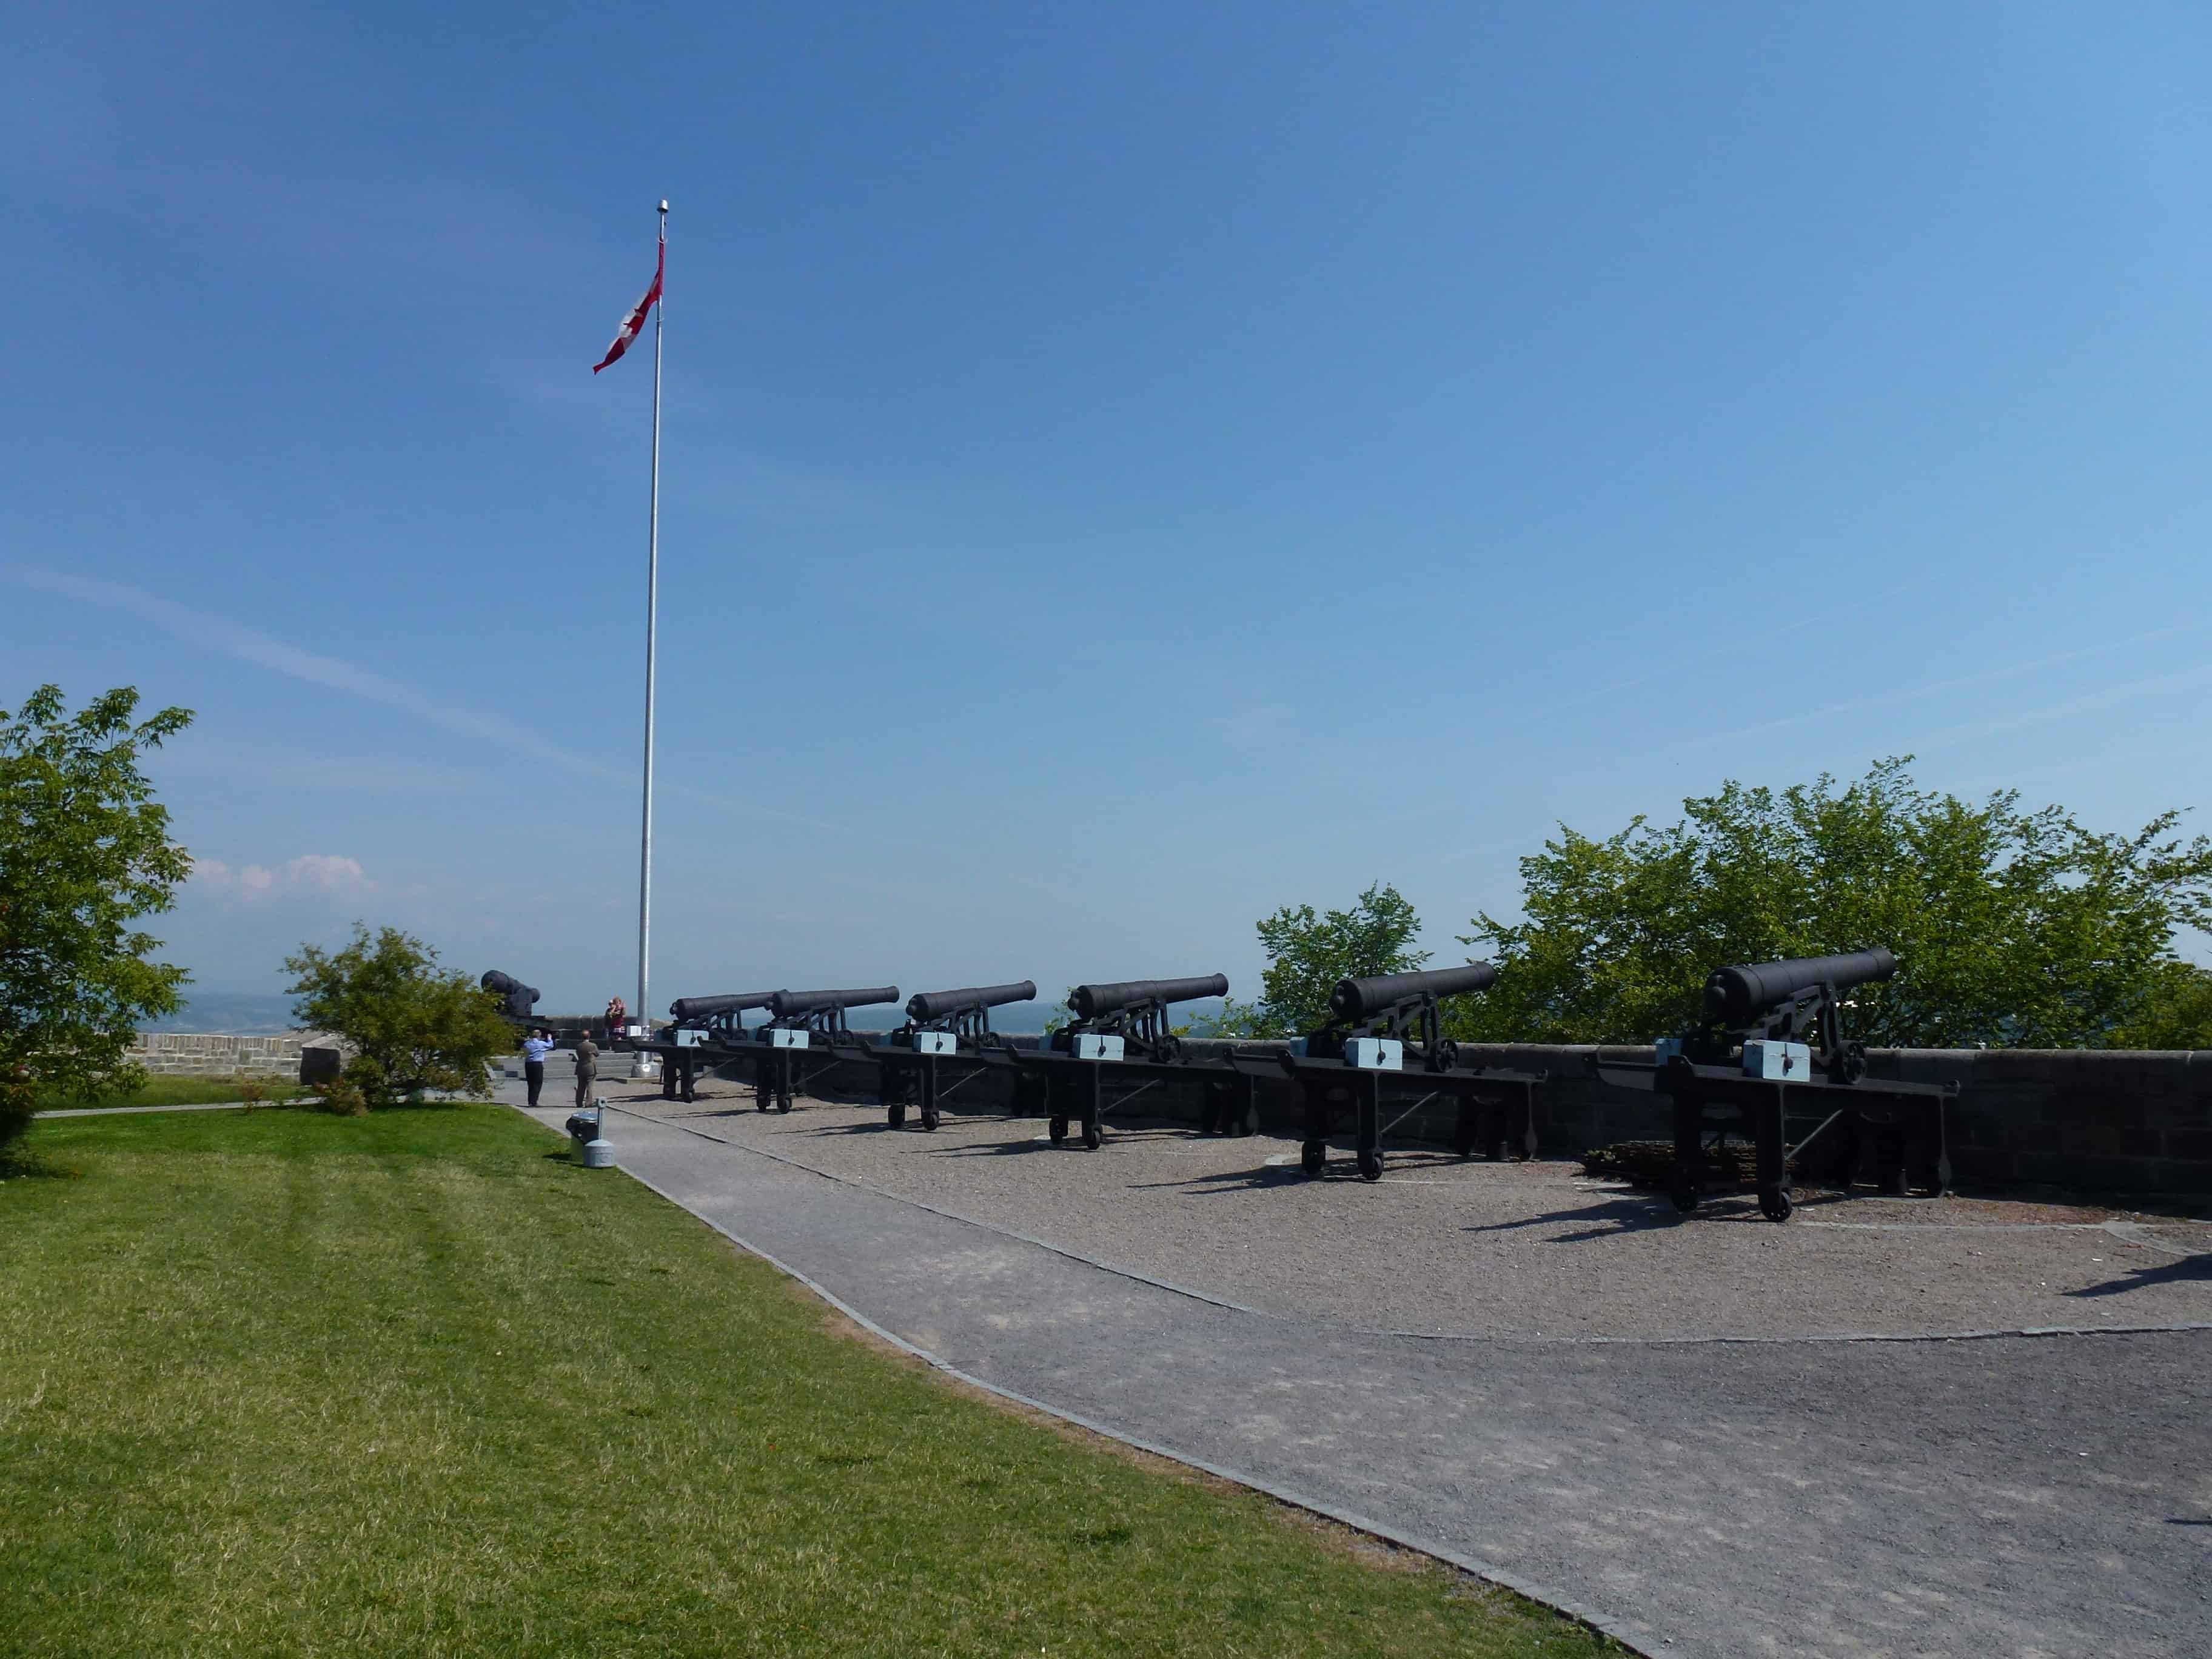 Cannons at La Citadelle de Québec, Canada